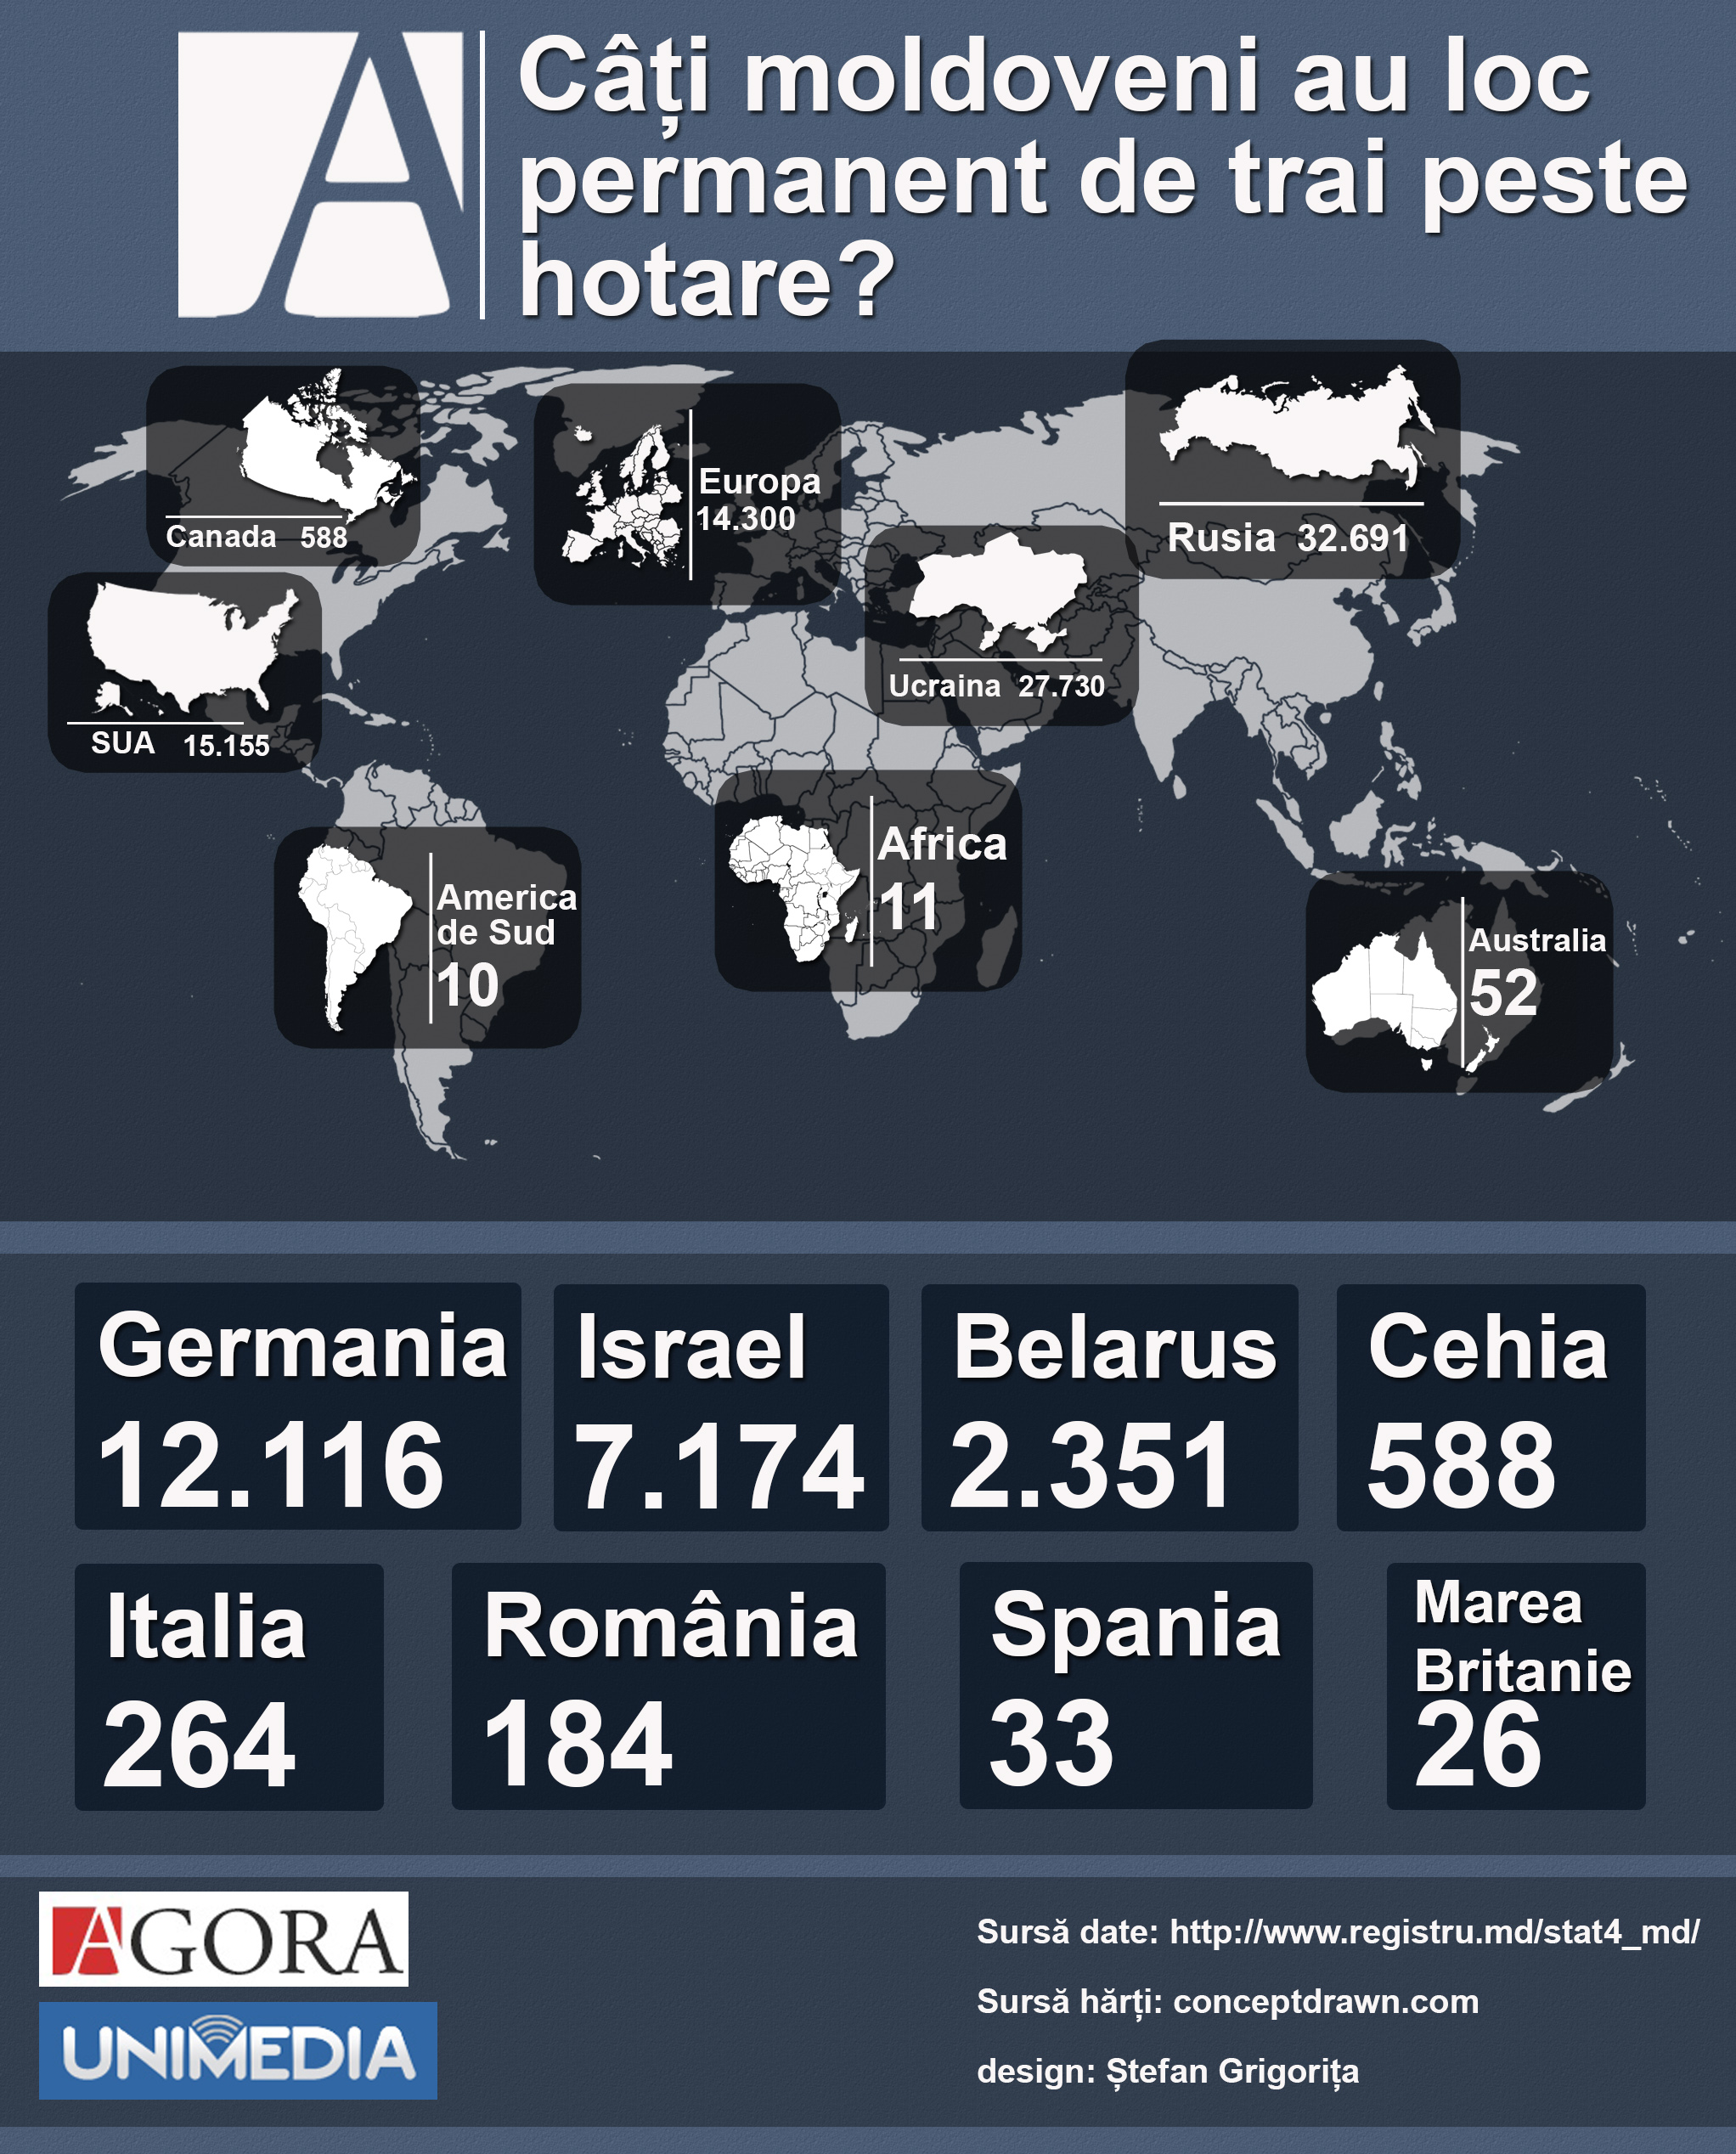 Agora Infografic C I Moldoveni Au Loc Permanent De Trai Peste Hotare